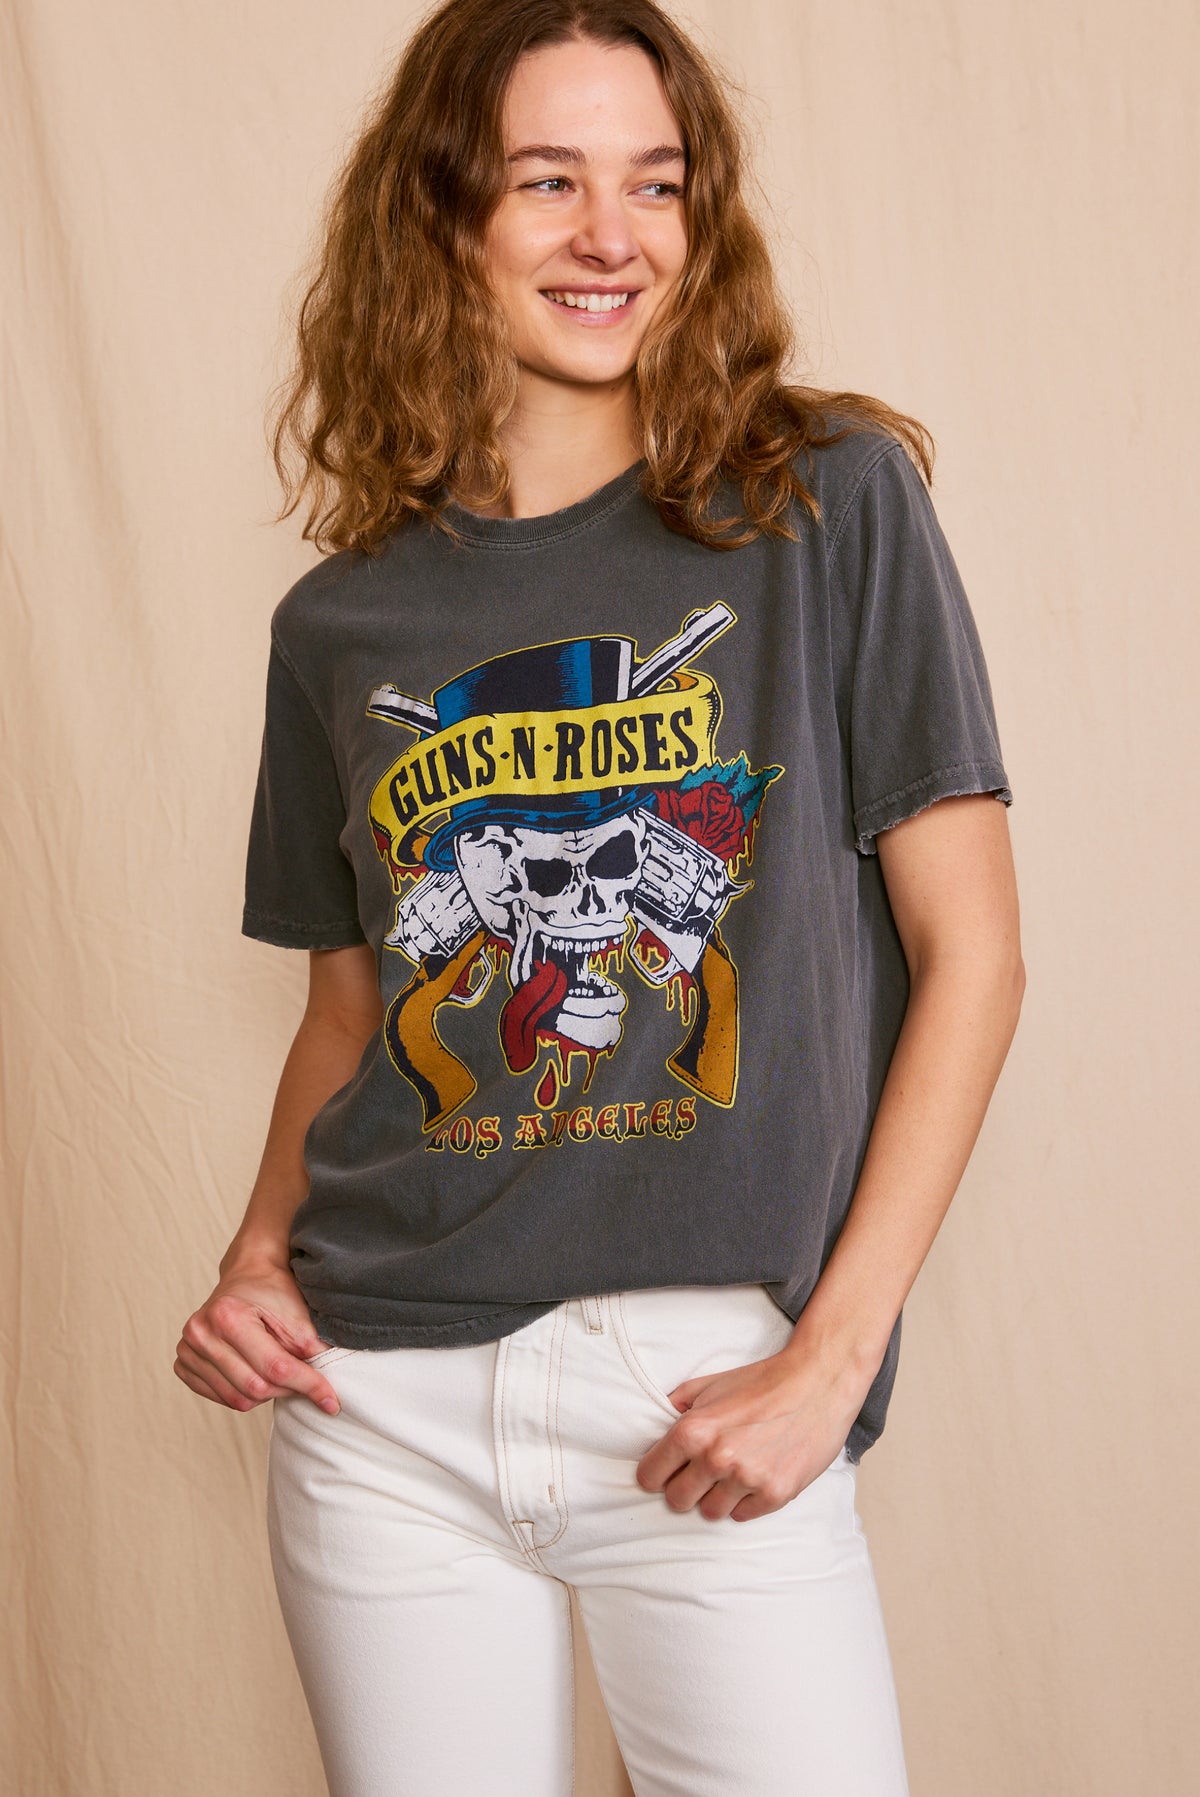 Guns N Roses Los Angeles Top Hat Skull Tee